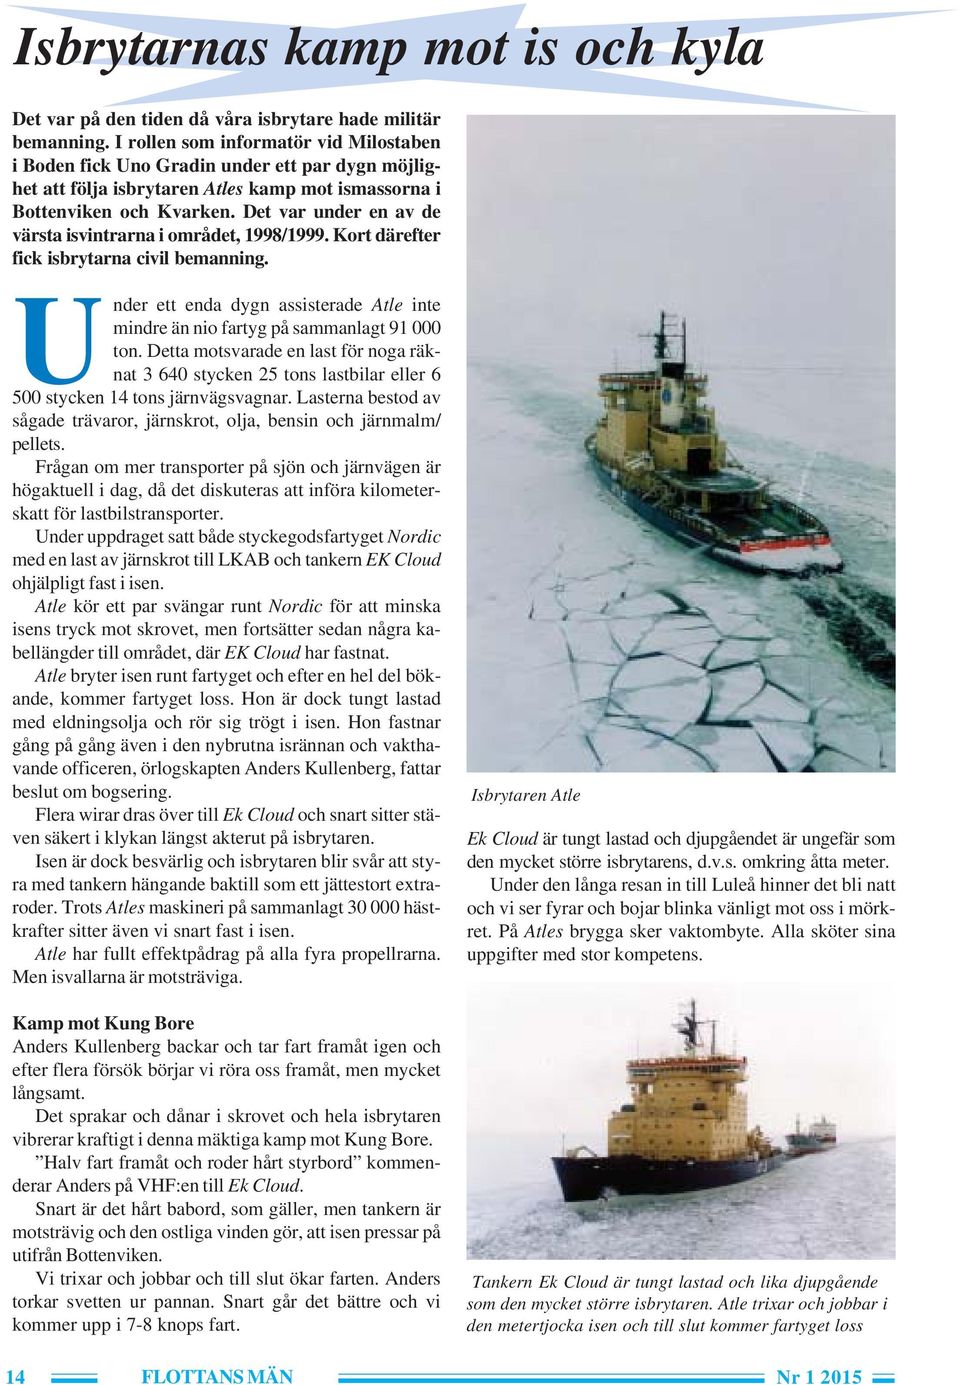 Det var under en av de värsta isvintrarna i området, 1998/1999. Kort därefter fick isbrytarna civil bemanning. Under ett enda dygn assisterade Atle inte mindre än nio fartyg på sammanlagt 91 000 ton.